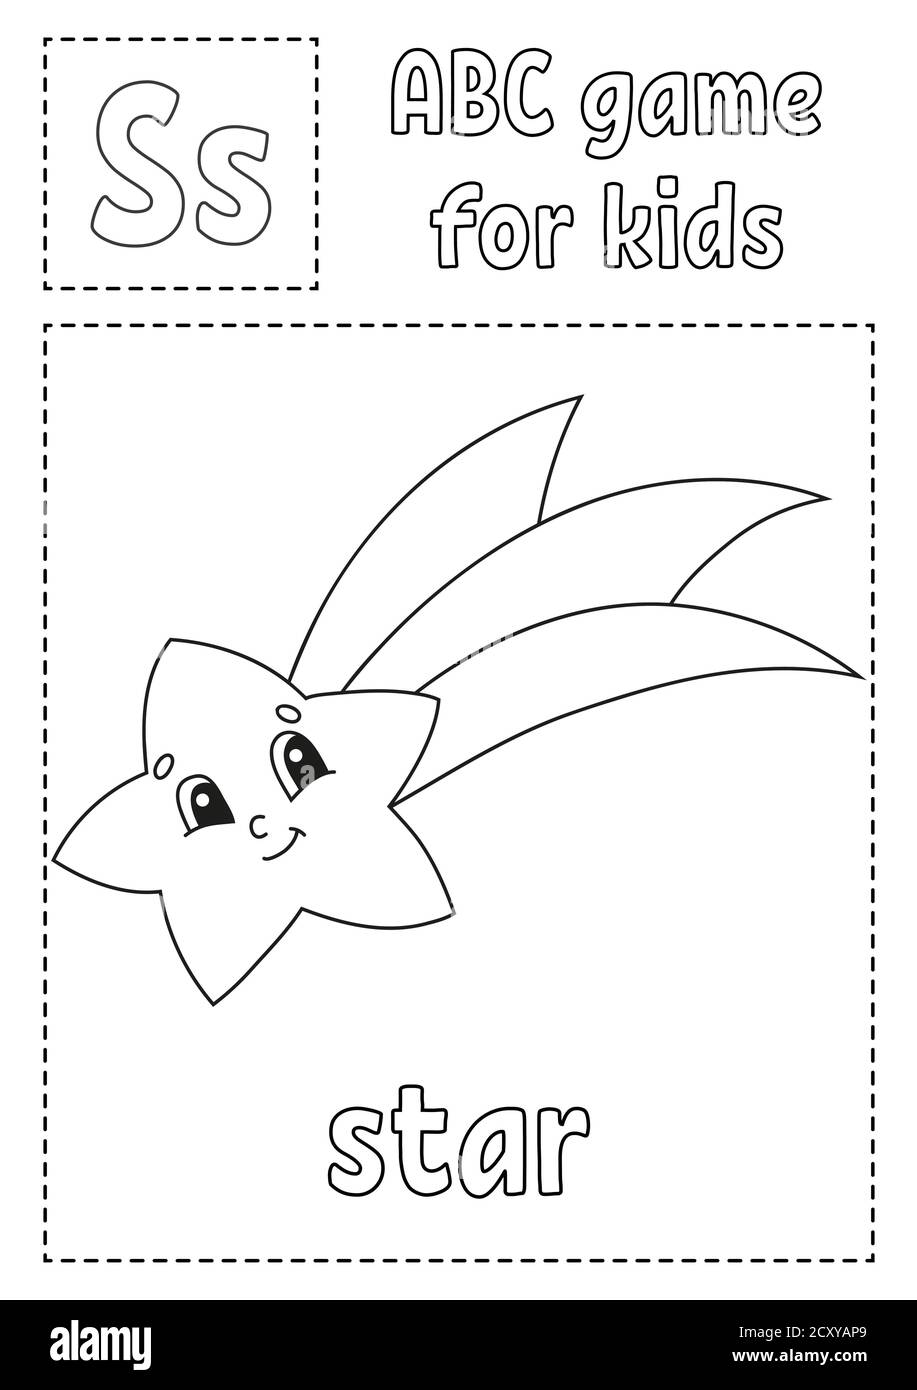 Der Buchstabe S steht für Stern. ABC-Spiel für Kinder. Alphabet Malseite. Zeichentrickfigur. Wort und Buchstabe. Vektorgrafik. Stock Vektor